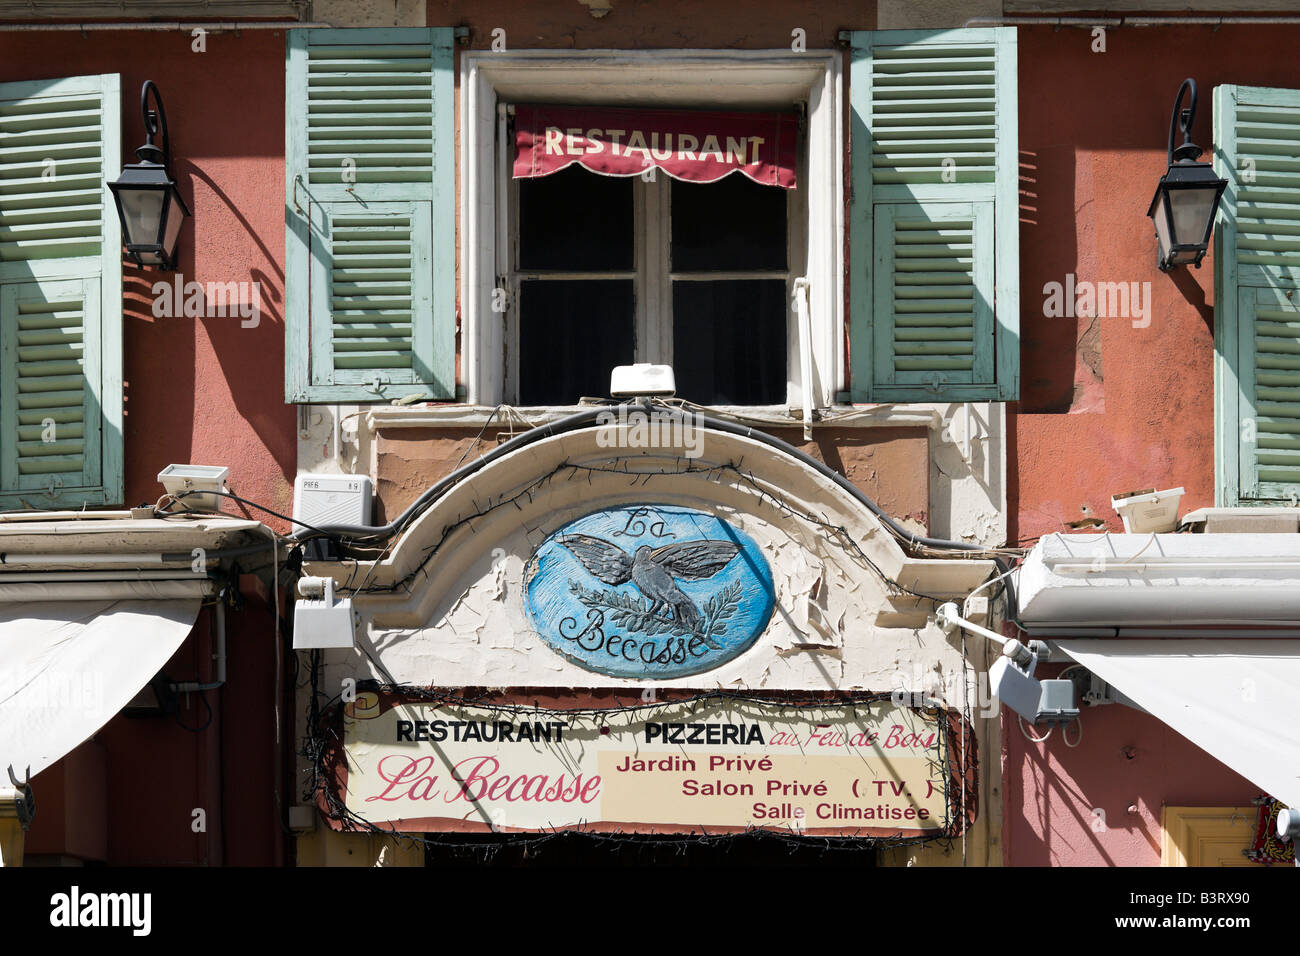 Finestra e serrande del ristorante sul Cours Saleya nella città vecchia (Vieux Nice), Nizza Cote d'Azur, Costa Azzurra, Francia Foto Stock